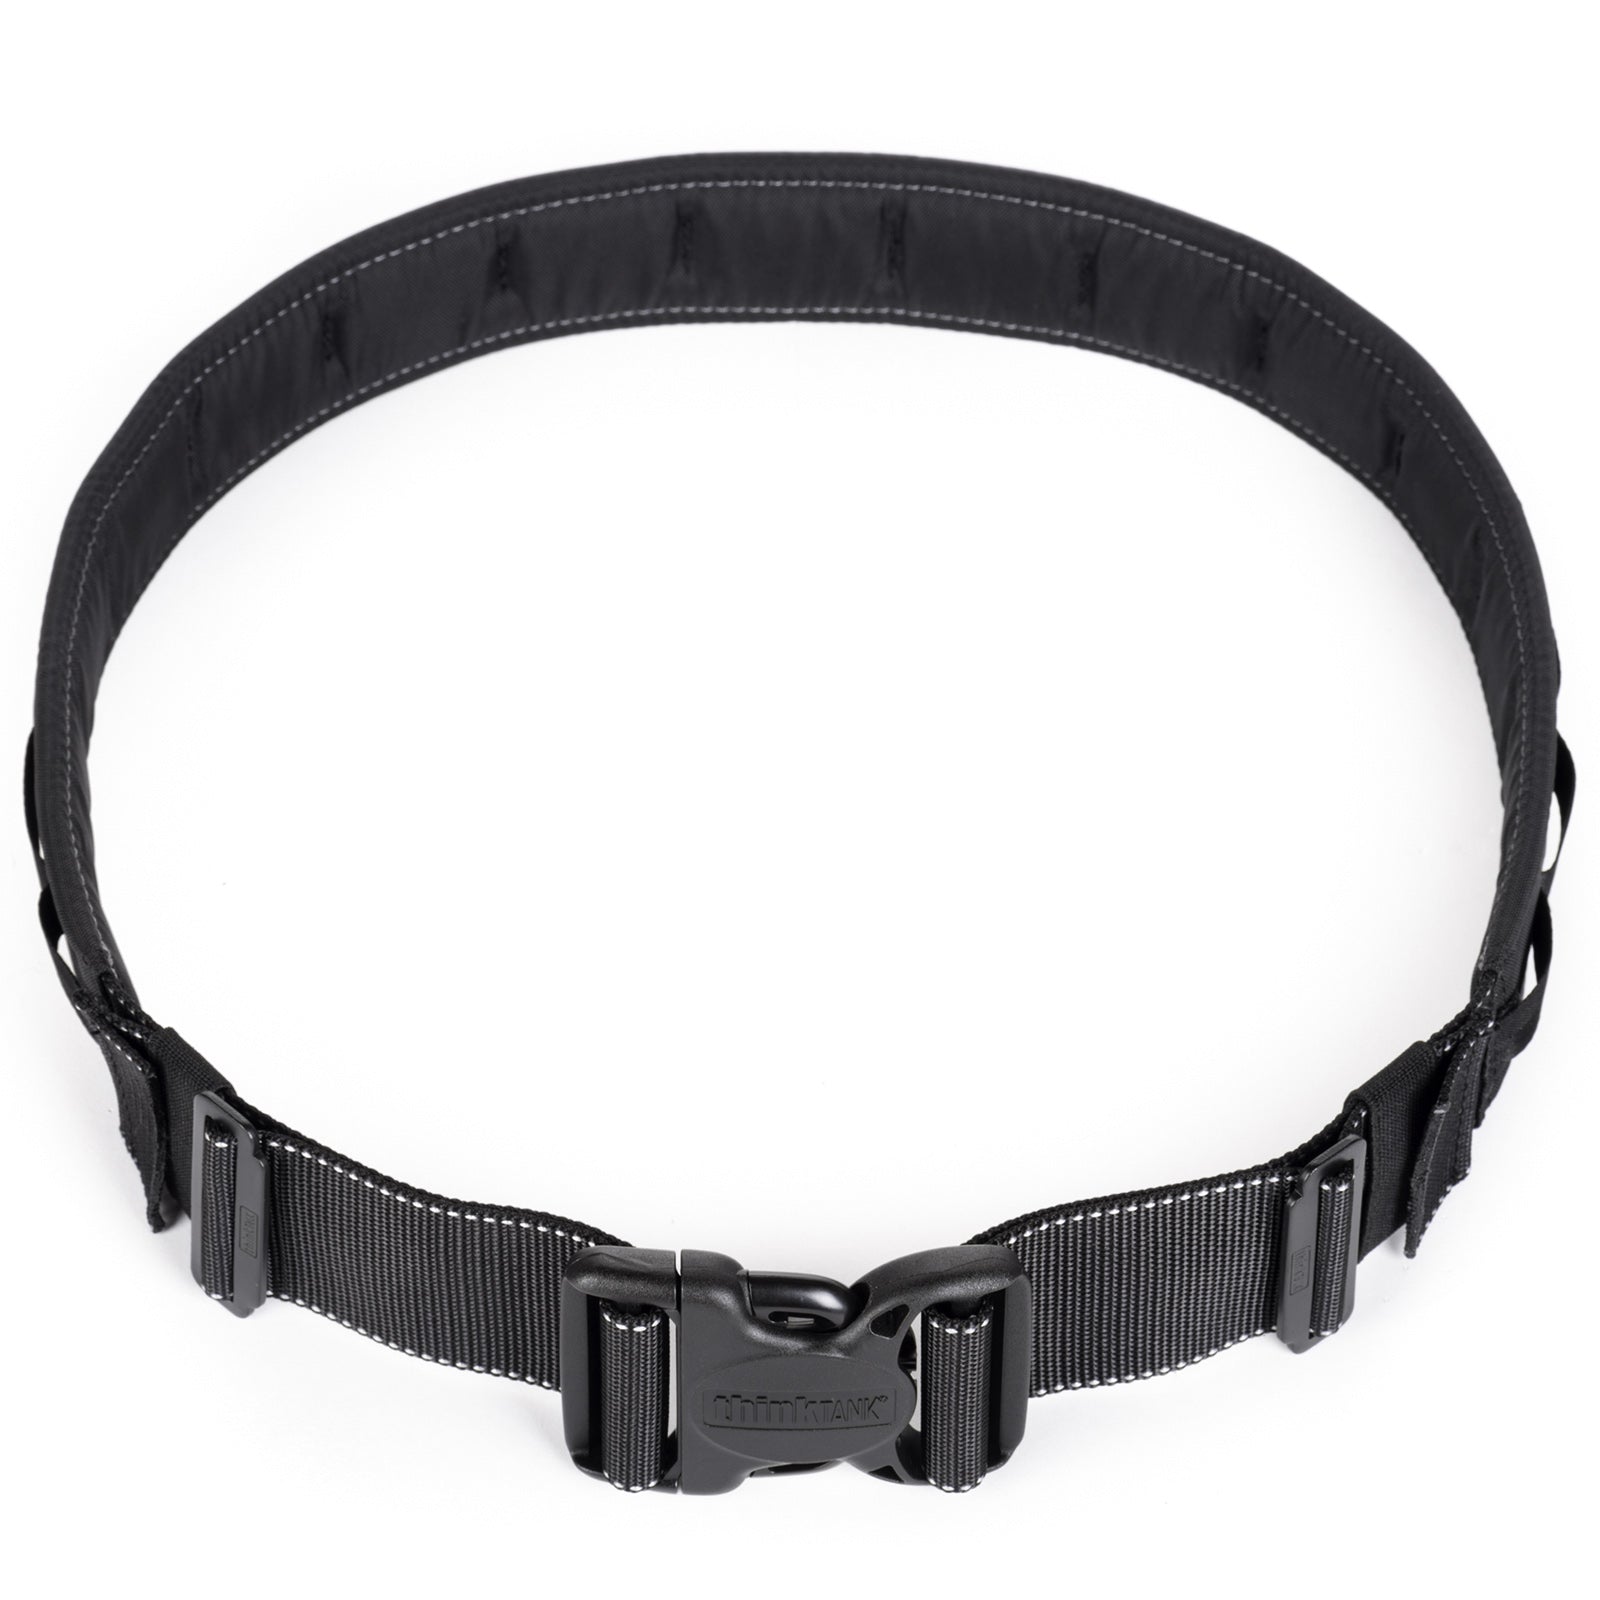 Thin Skin Belt - modular DSLR Camera belt system for professionals ...